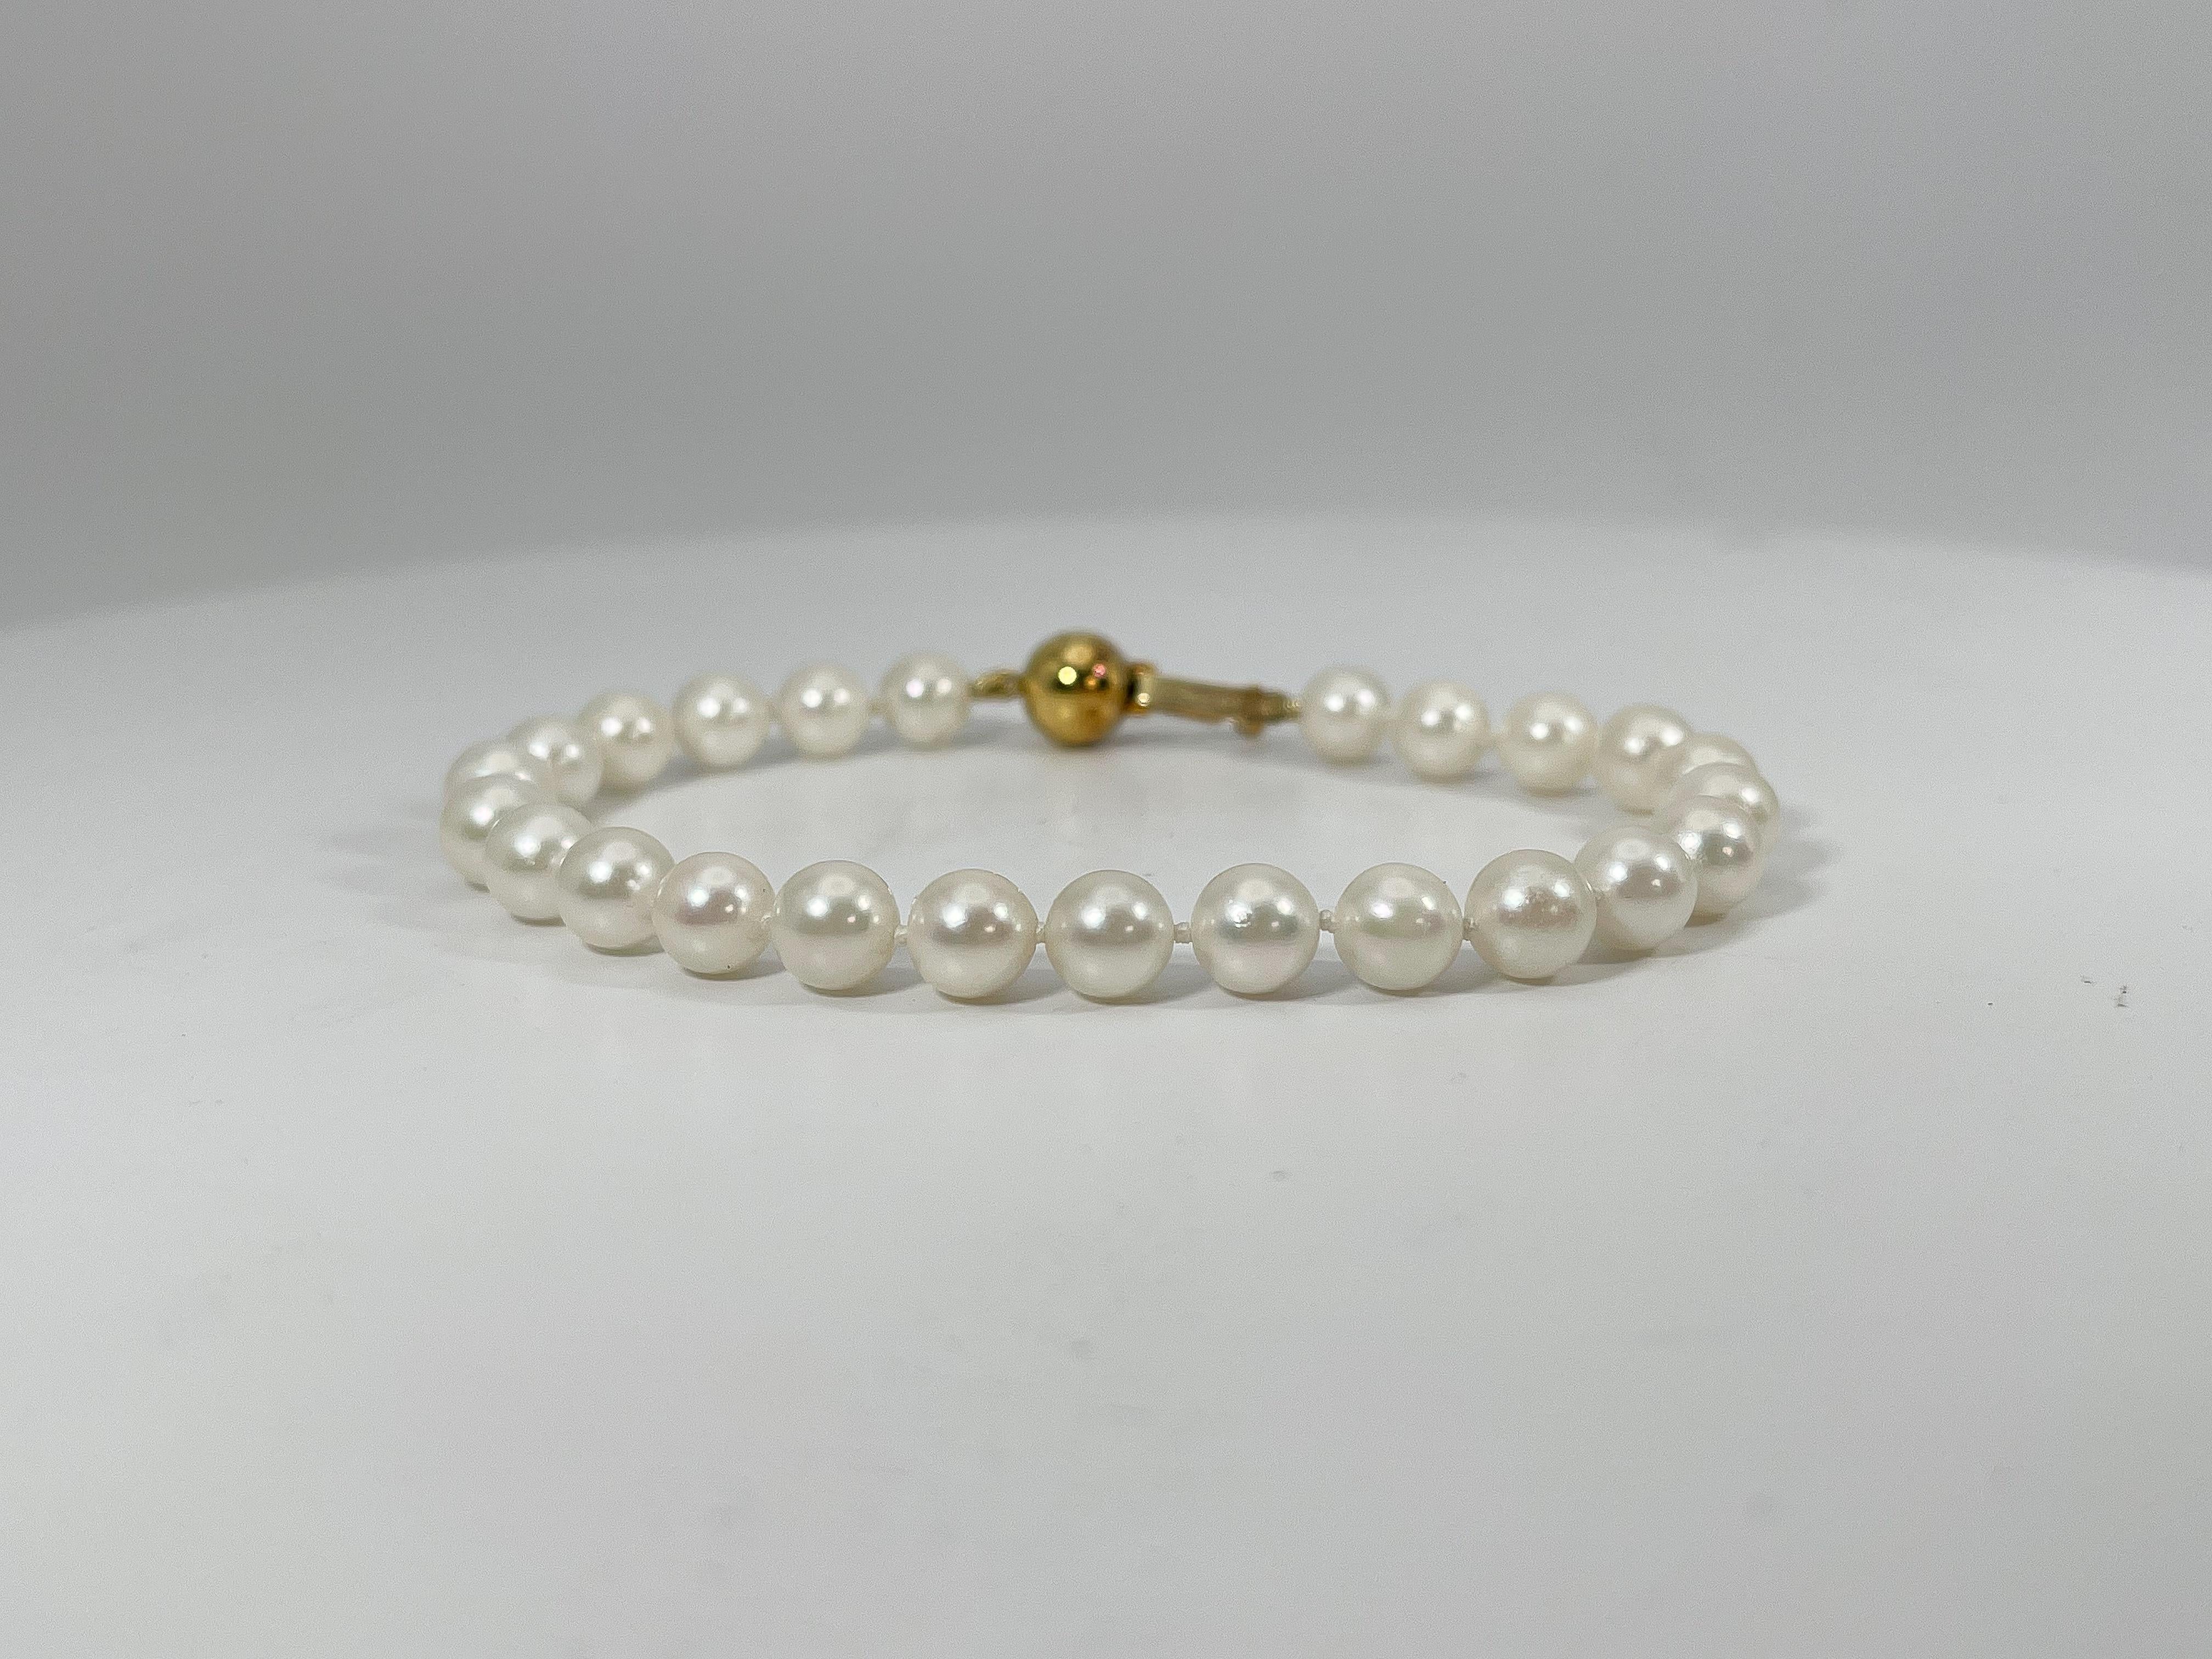 Armband aus 14k Gelbgold mit weißen Perlen. Dieses Armband hat einen Perlenverschluss zum Öffnen und Schließen, die Länge beträgt 7 Zoll, die Breite 6,5 mm, und es hat ein Gesamtgewicht von 11,2 Gramm.